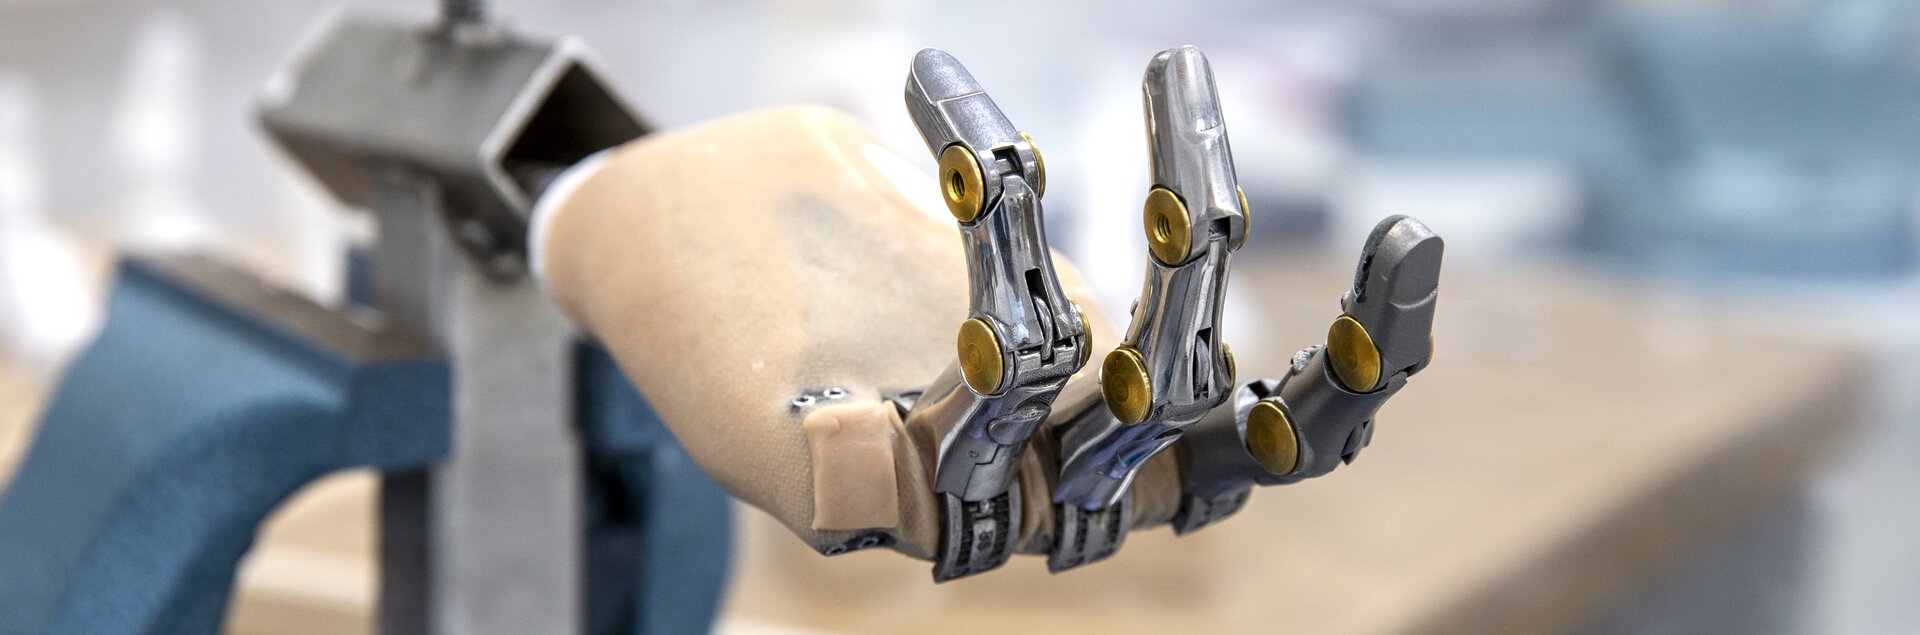 Anfertigung einer Teilhandprothese | © Pohlig GmbH